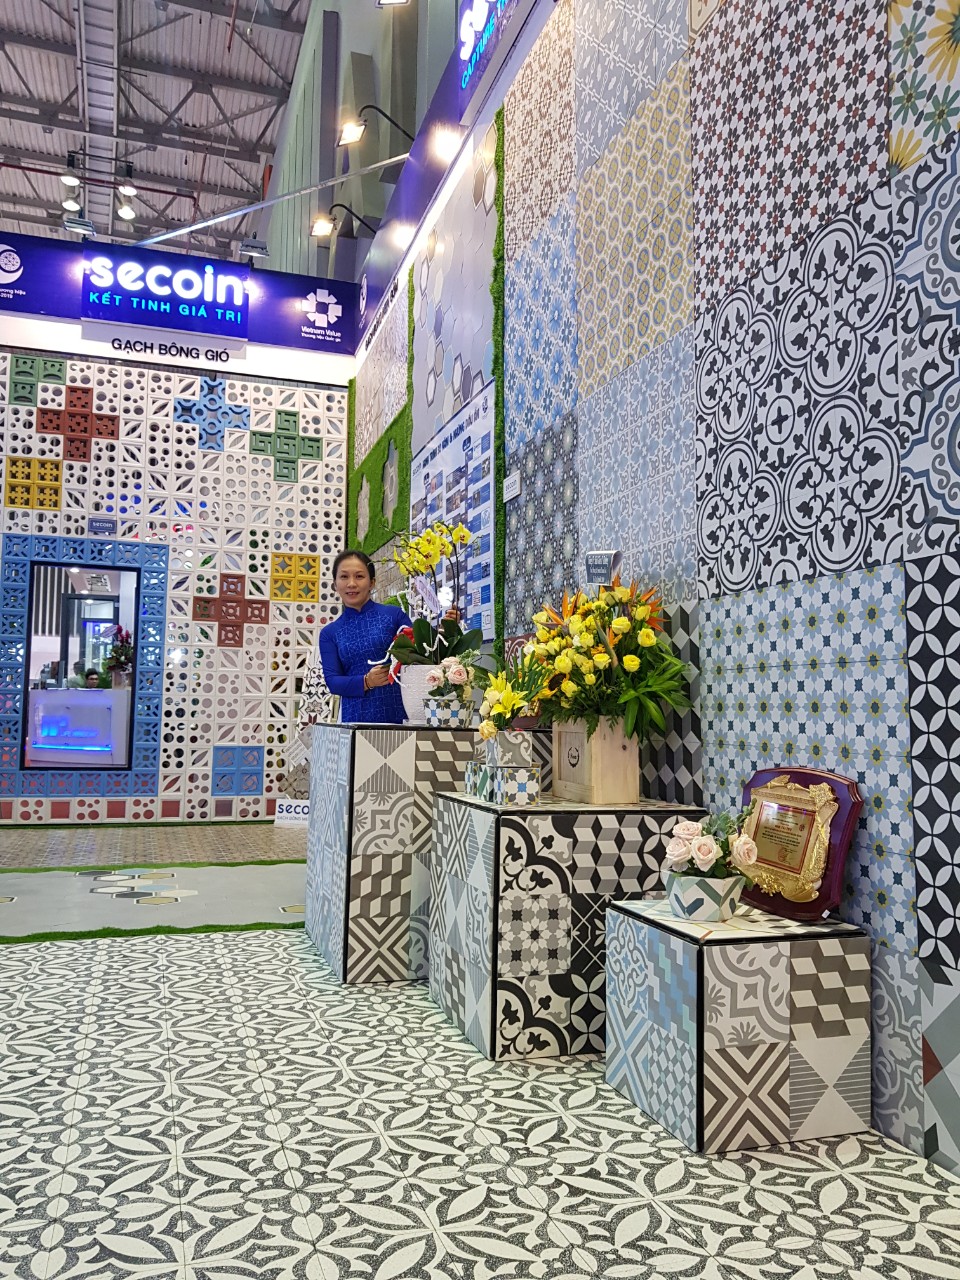 Secoin - Hội chợ Vietbuild Hồ Chí Minh lần thứ 2 năm 2019